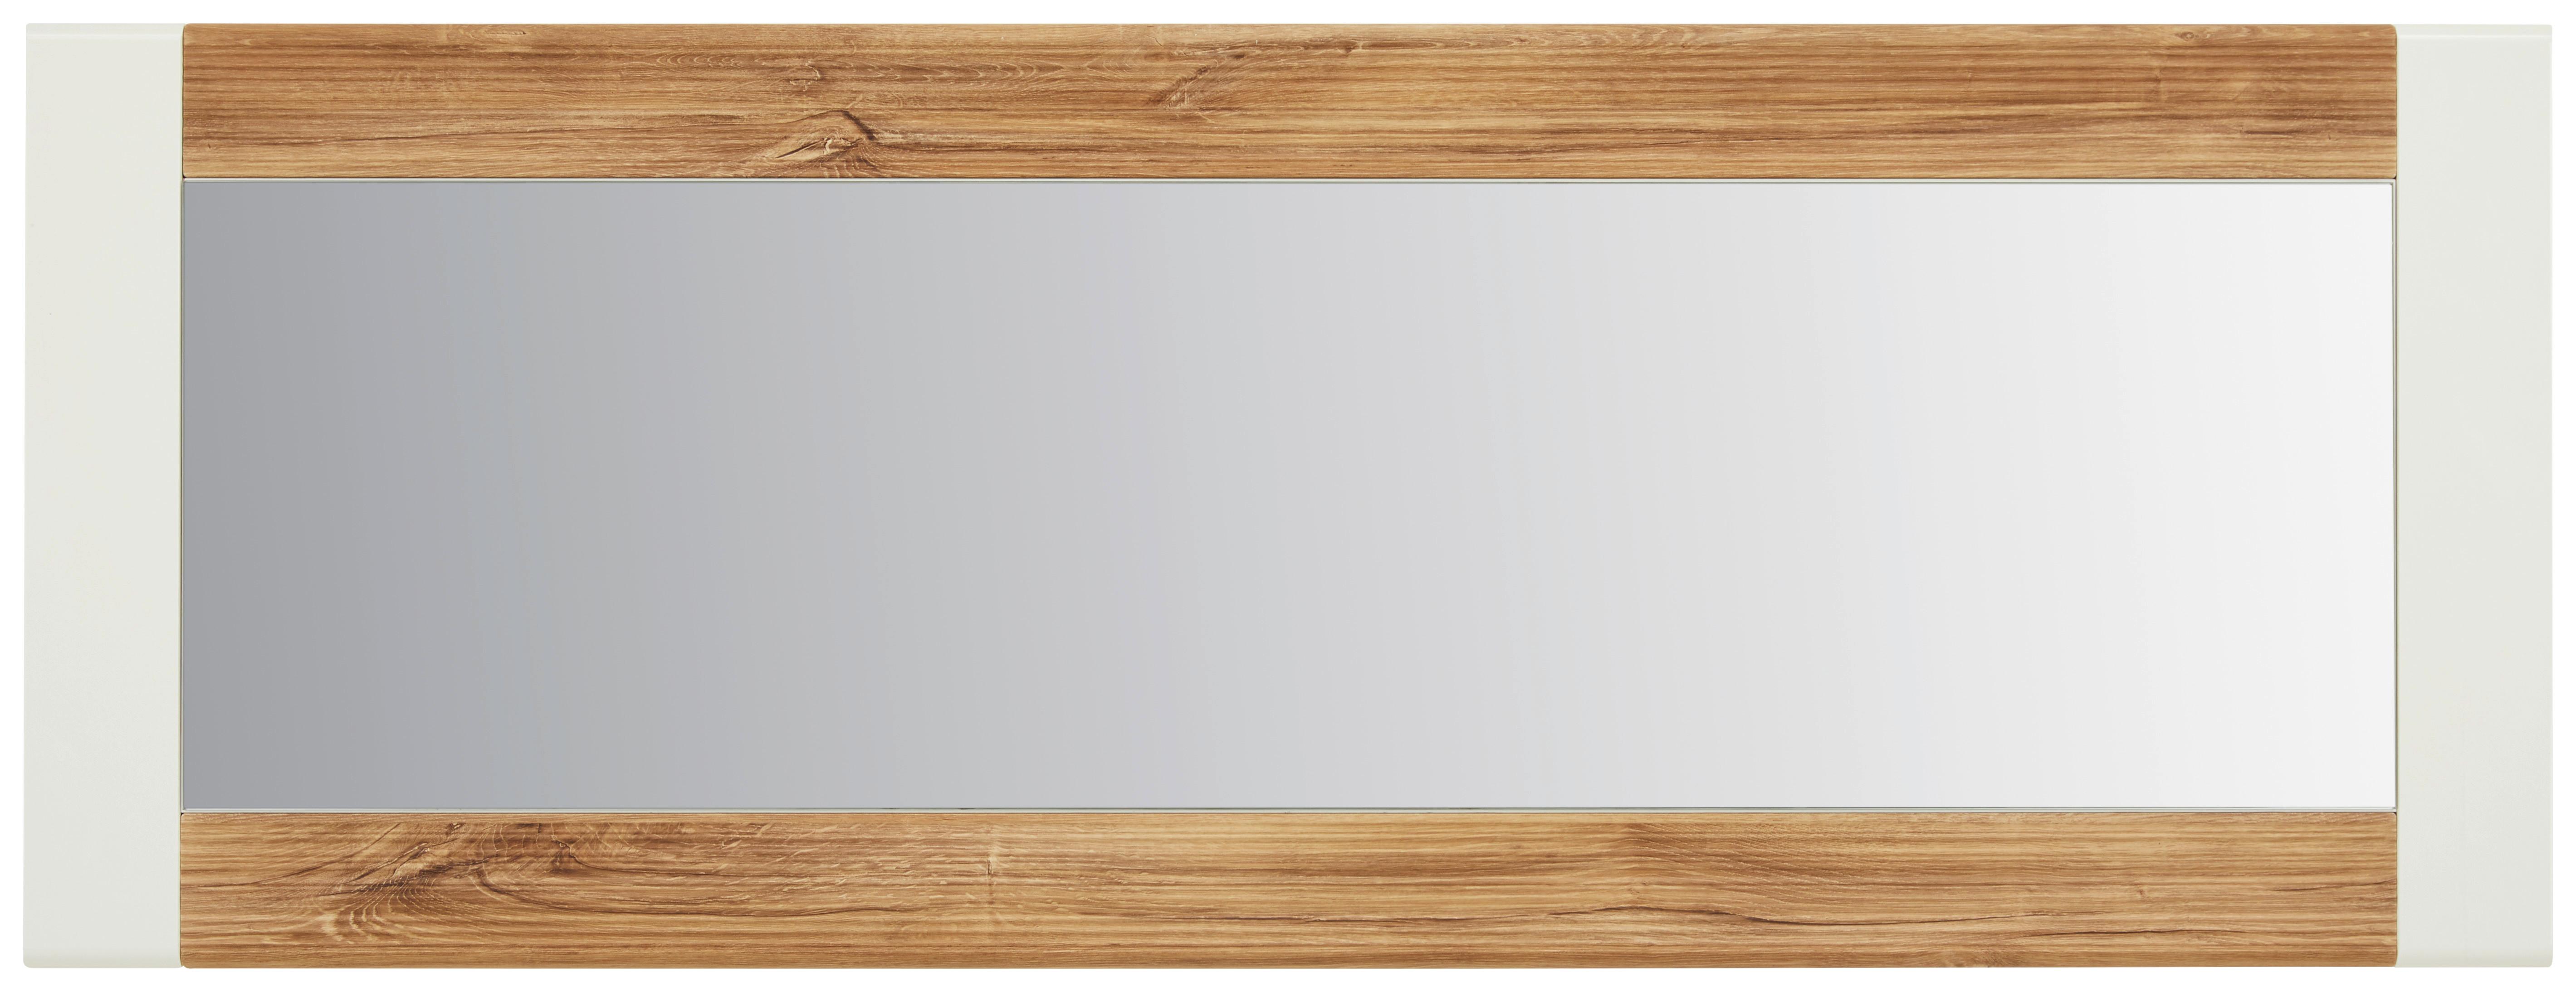 Oglindă de perete LEONARDO - alb/culoare lemn stejar, Modern, sticlă/material pe bază de lemn (60/160/2cm) - Modern Living